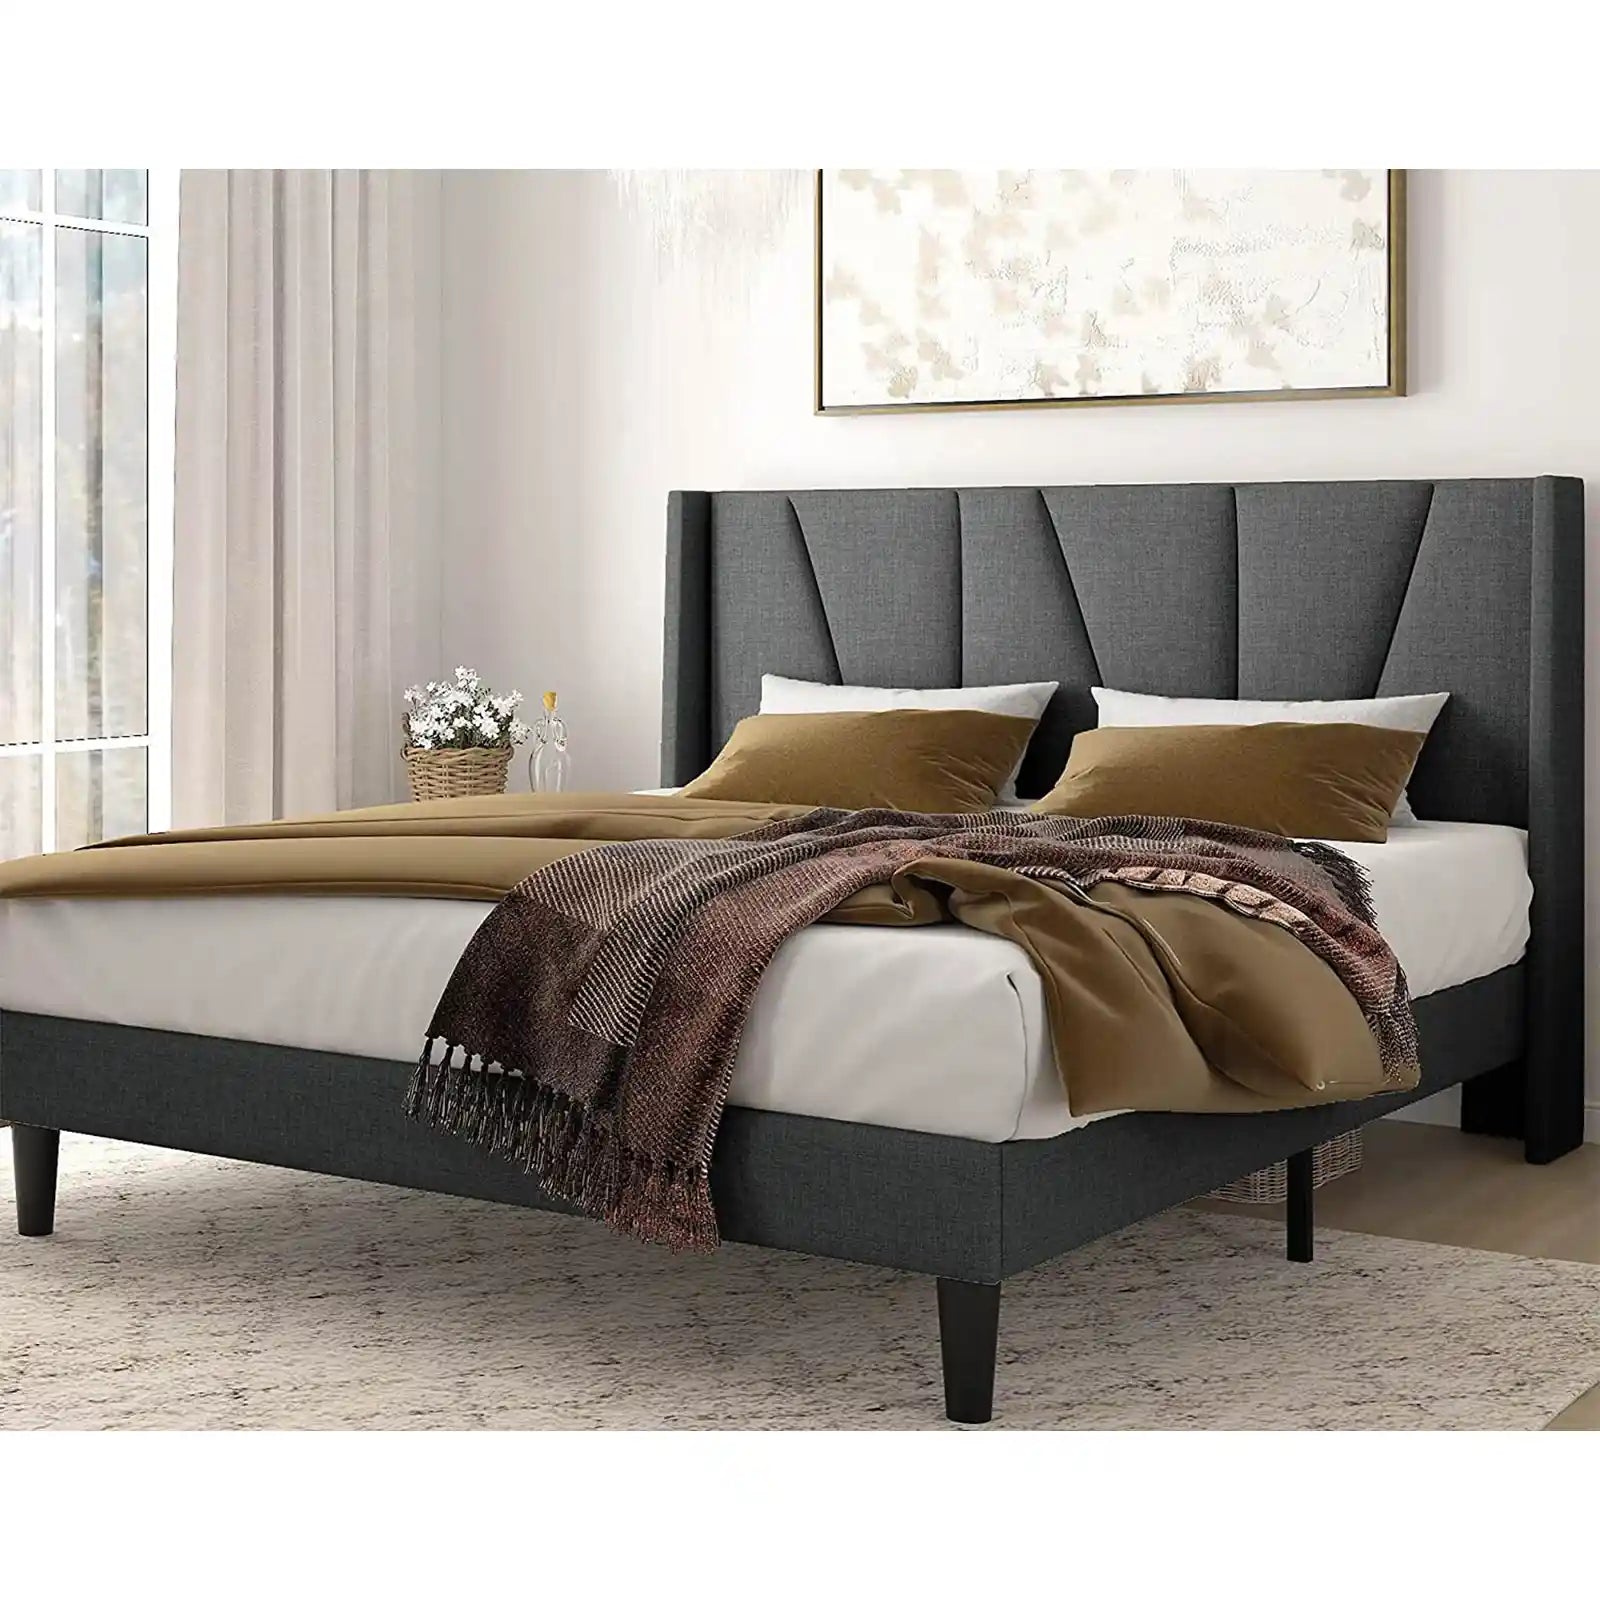 Estructura de cama con plataforma tapizada con respaldo lateral y cabecera geométrica